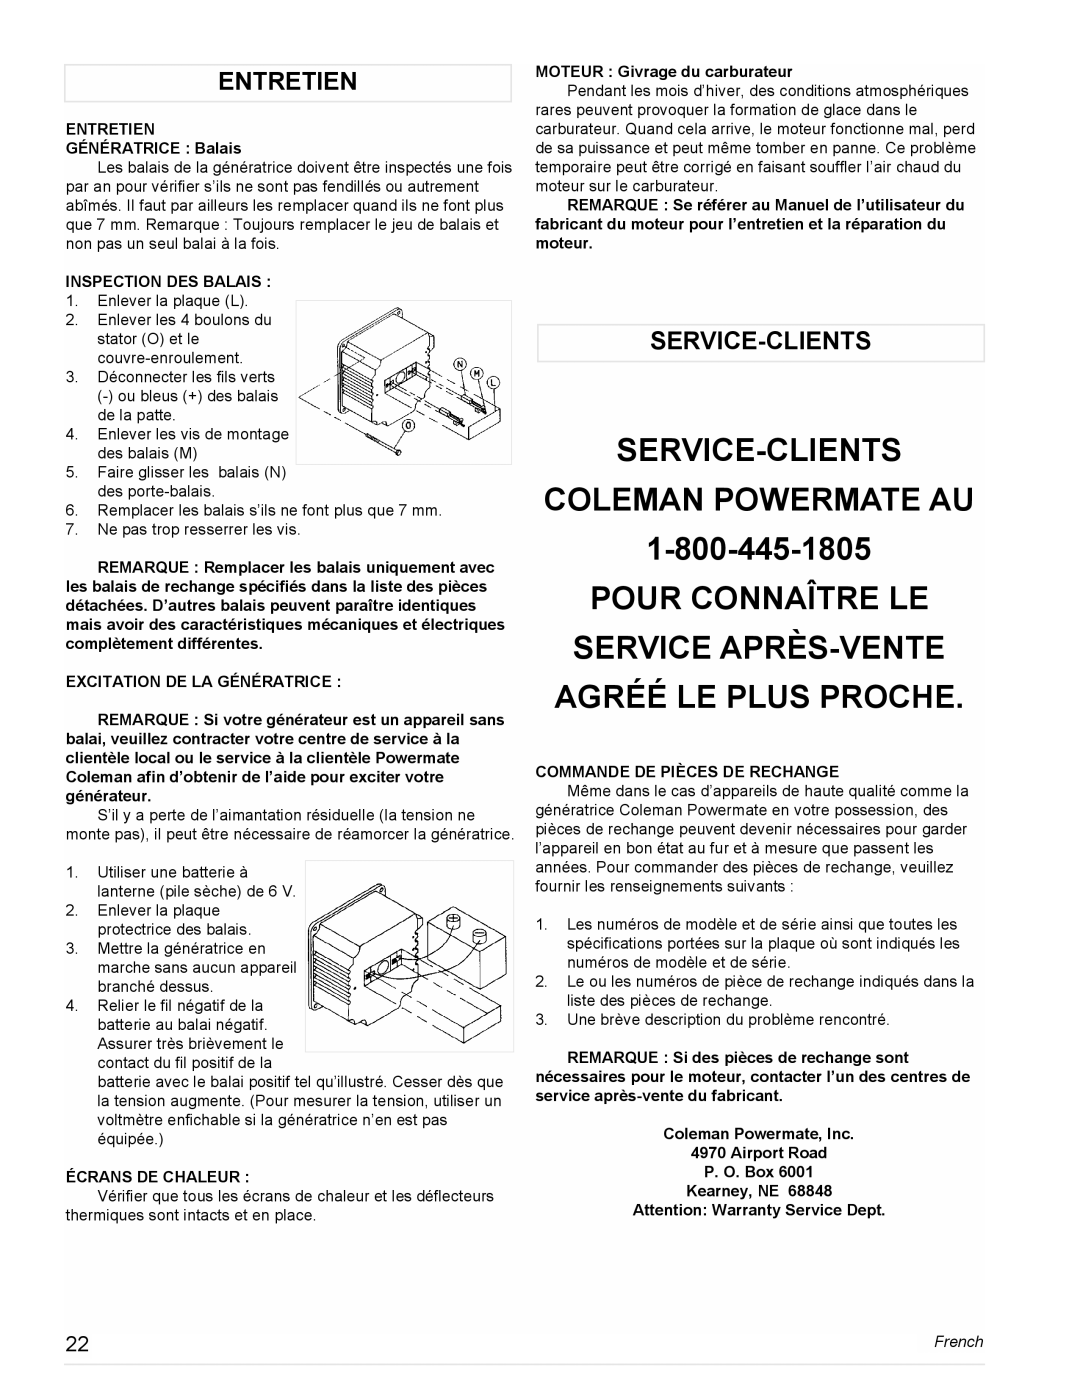 Powermate PM0473503, PL0473503, PM0478022, PM0477022, PM0474203 manual Service-Clients Coleman Powermate Au, Entretien, French 